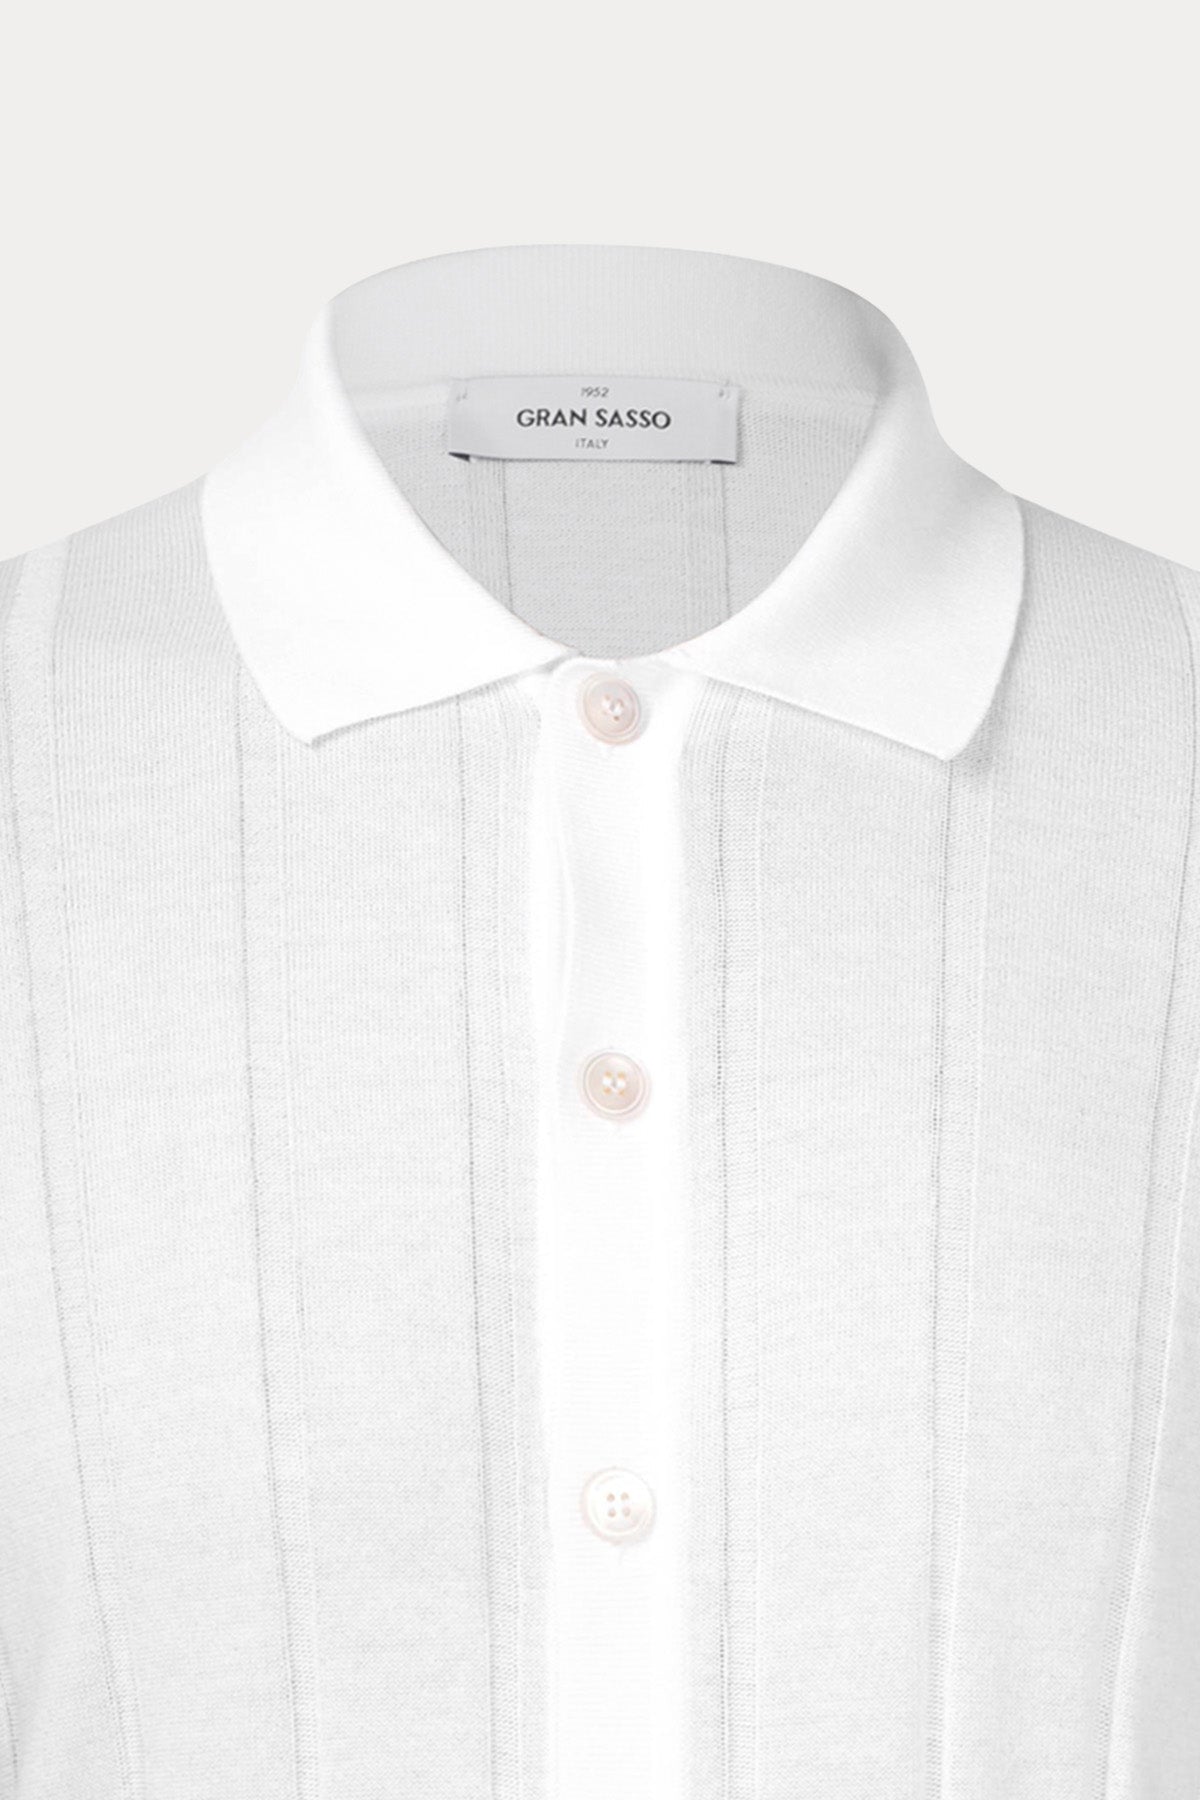 Gran Sasso Düğmeli Örgü Triko Gömlek